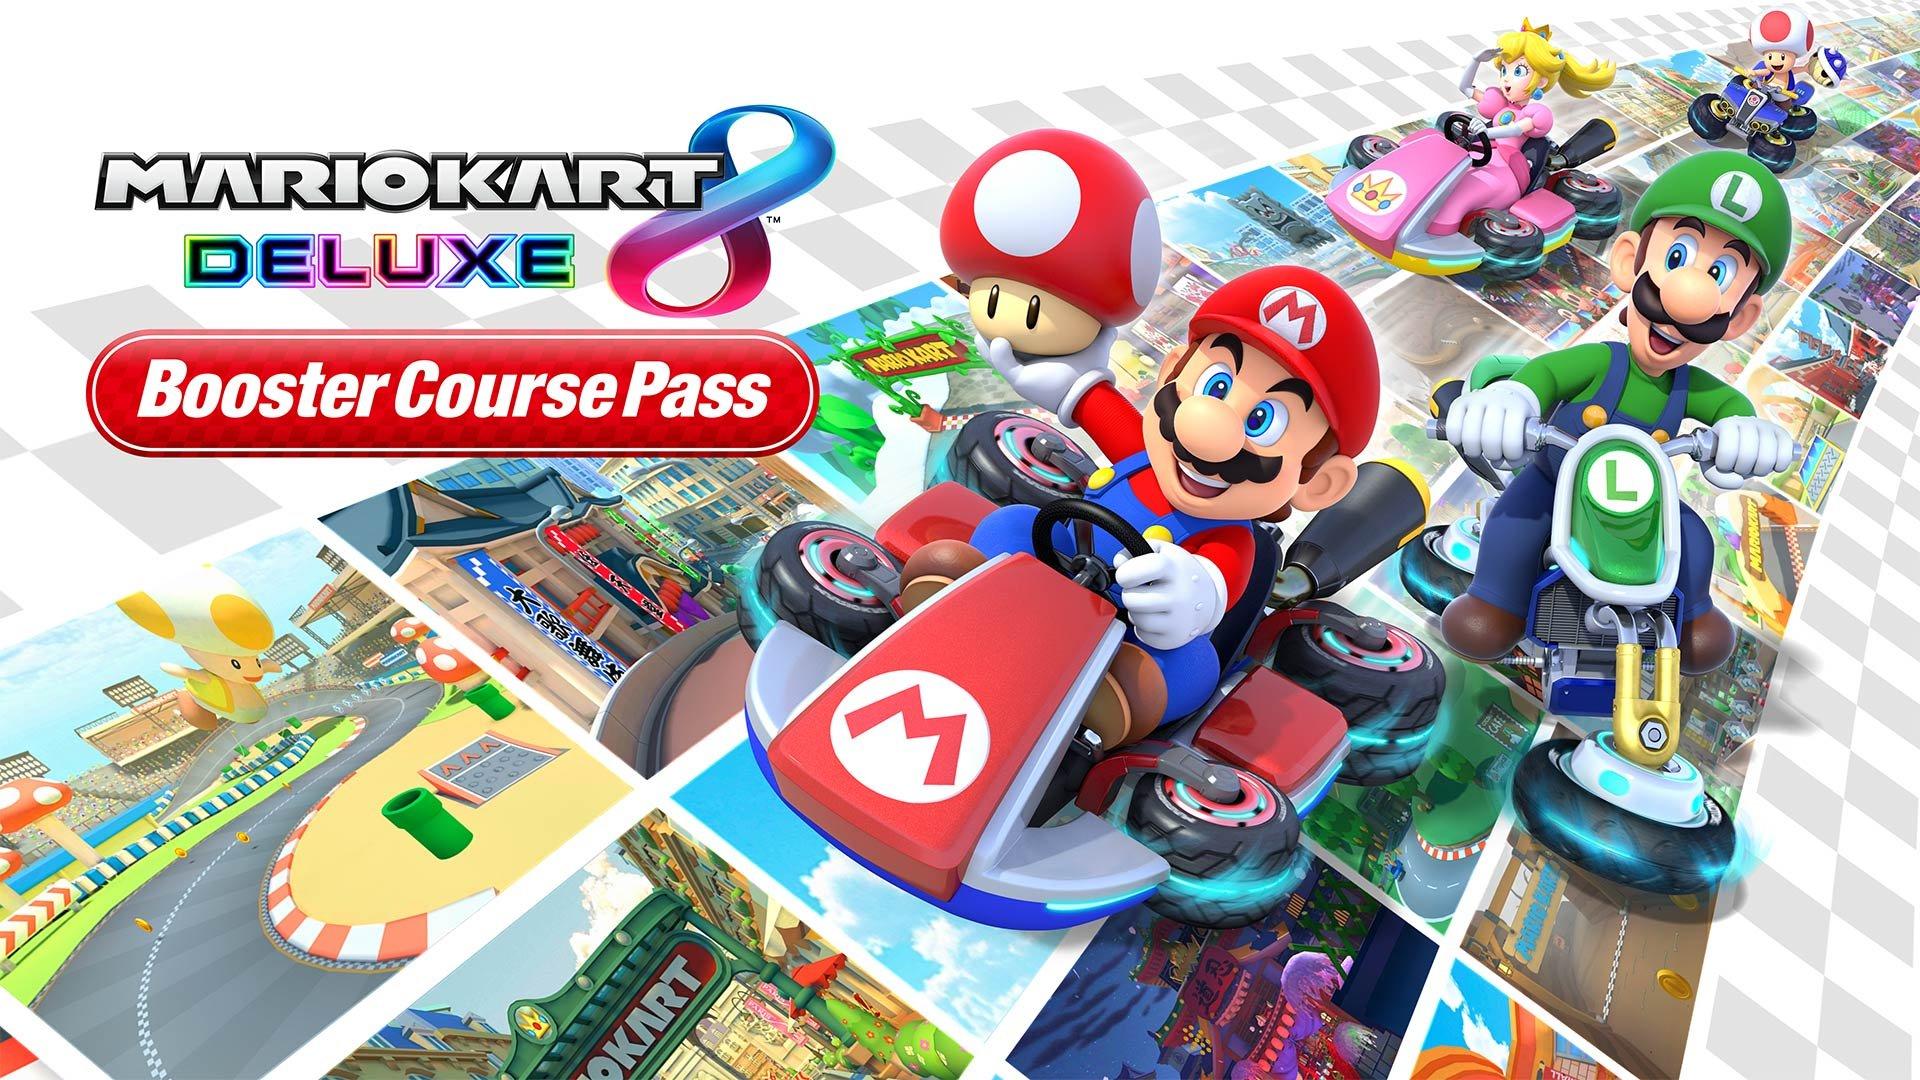 https://media.gamestop.com/i/gamestop/11200525/Mario-Kart-8-Deluxe-Booster-Course-Pass-DLC?$pdp$